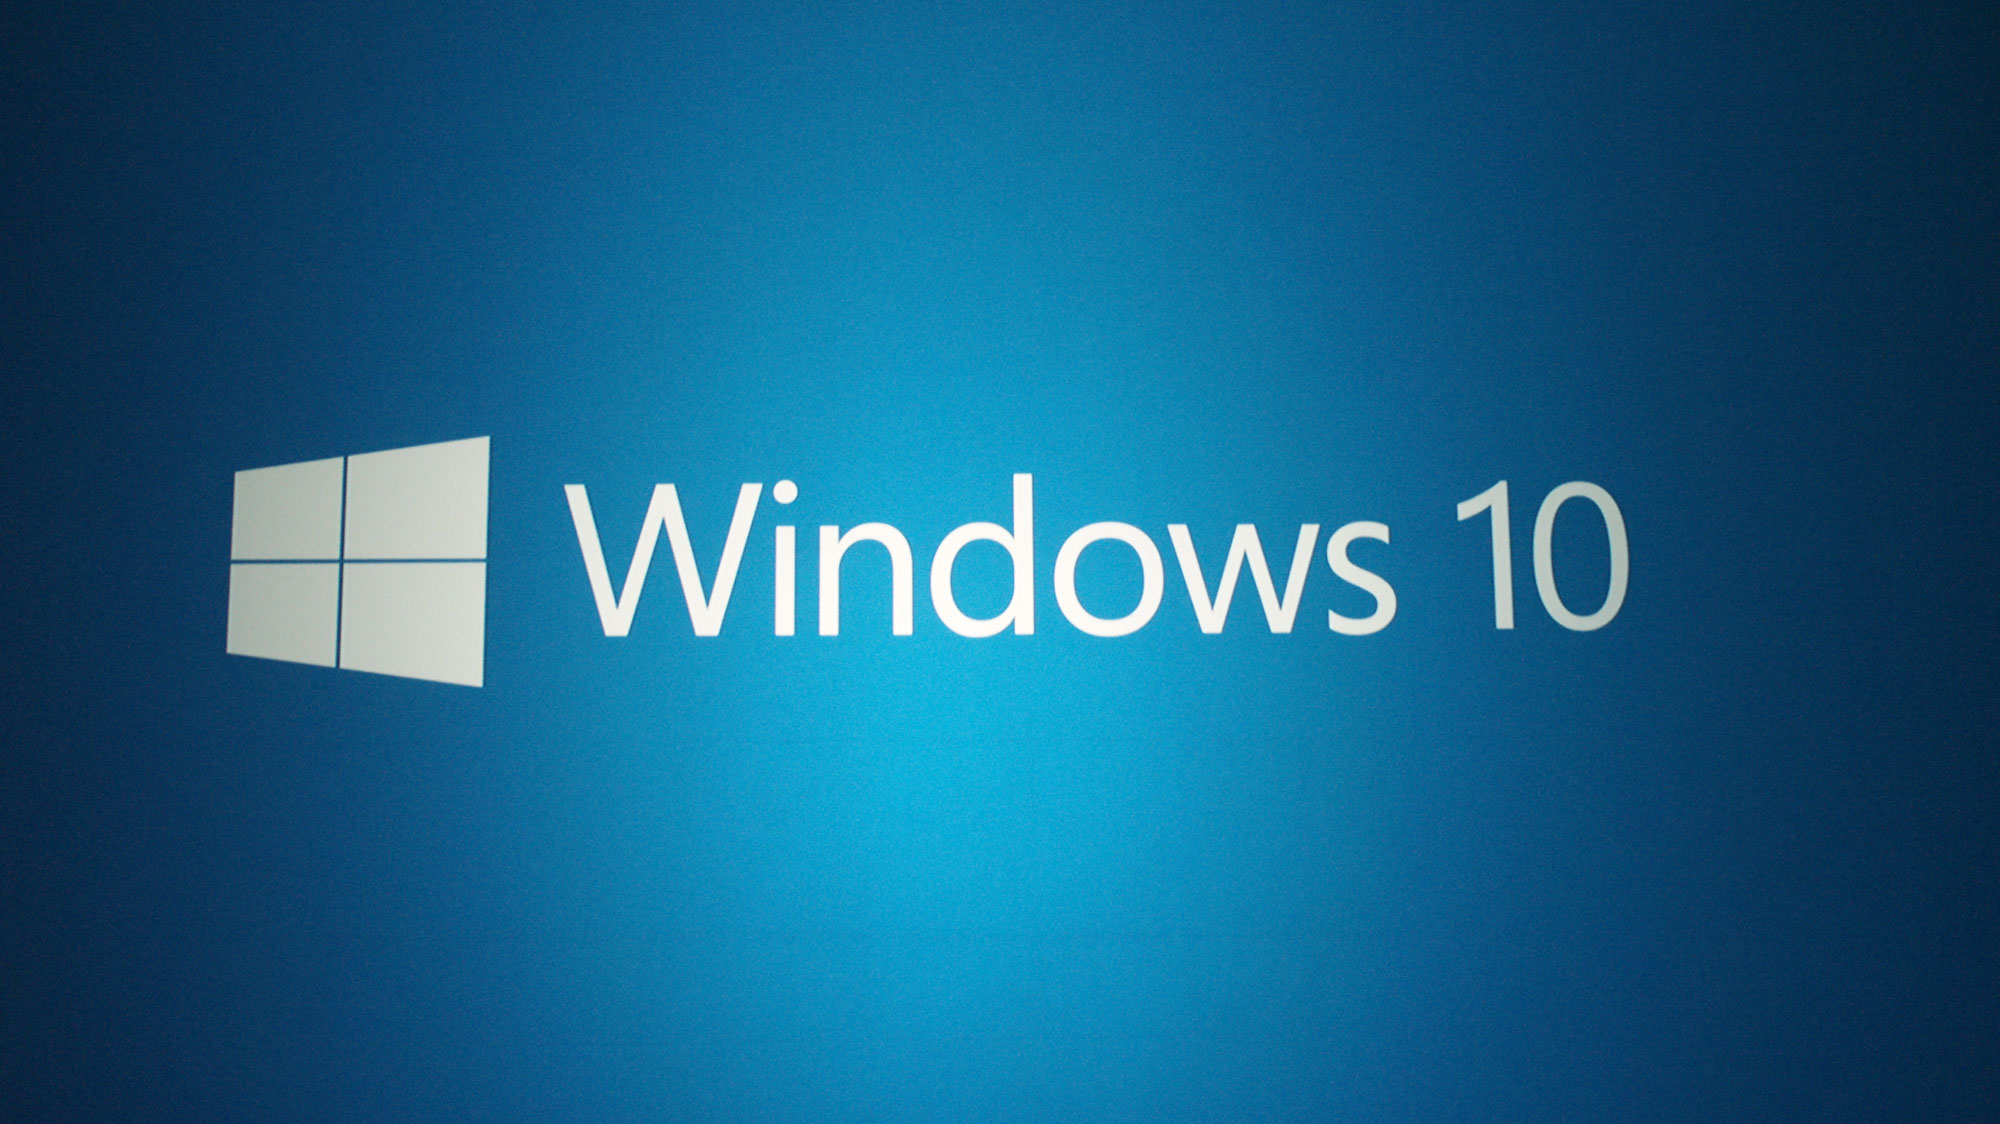 Windows 10 pode superar o Windows 7 antes do final do ano